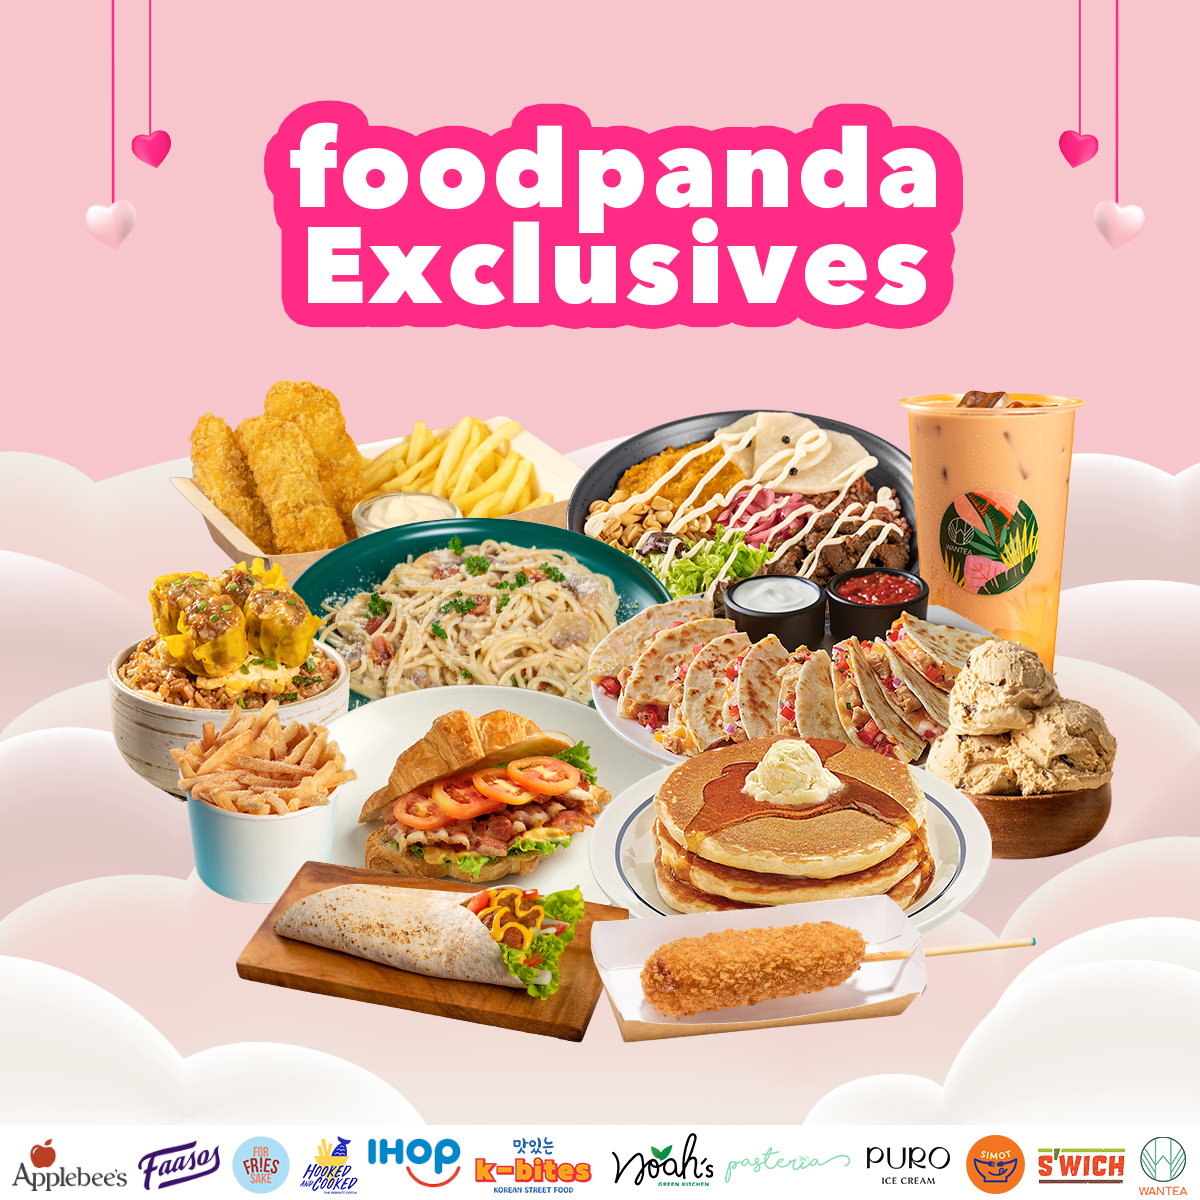 Code 2022 panda promo food 50% OFF